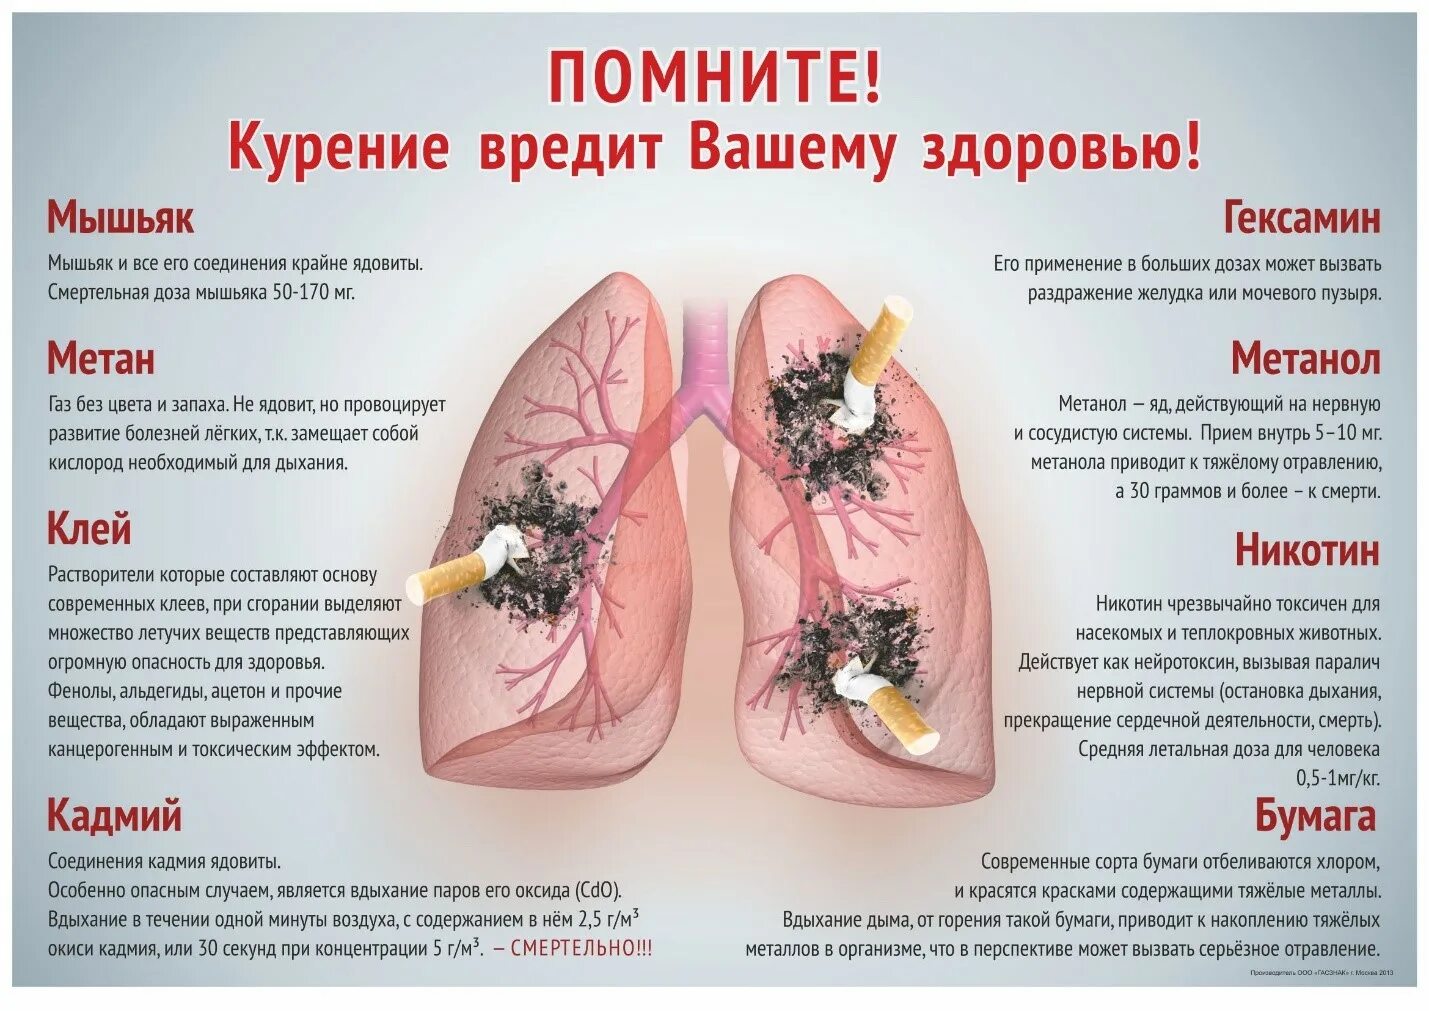 Буклет на тему курение. Плакат «вред курения». Курение вредит здоровью. Курение вредит вашему здоровью.